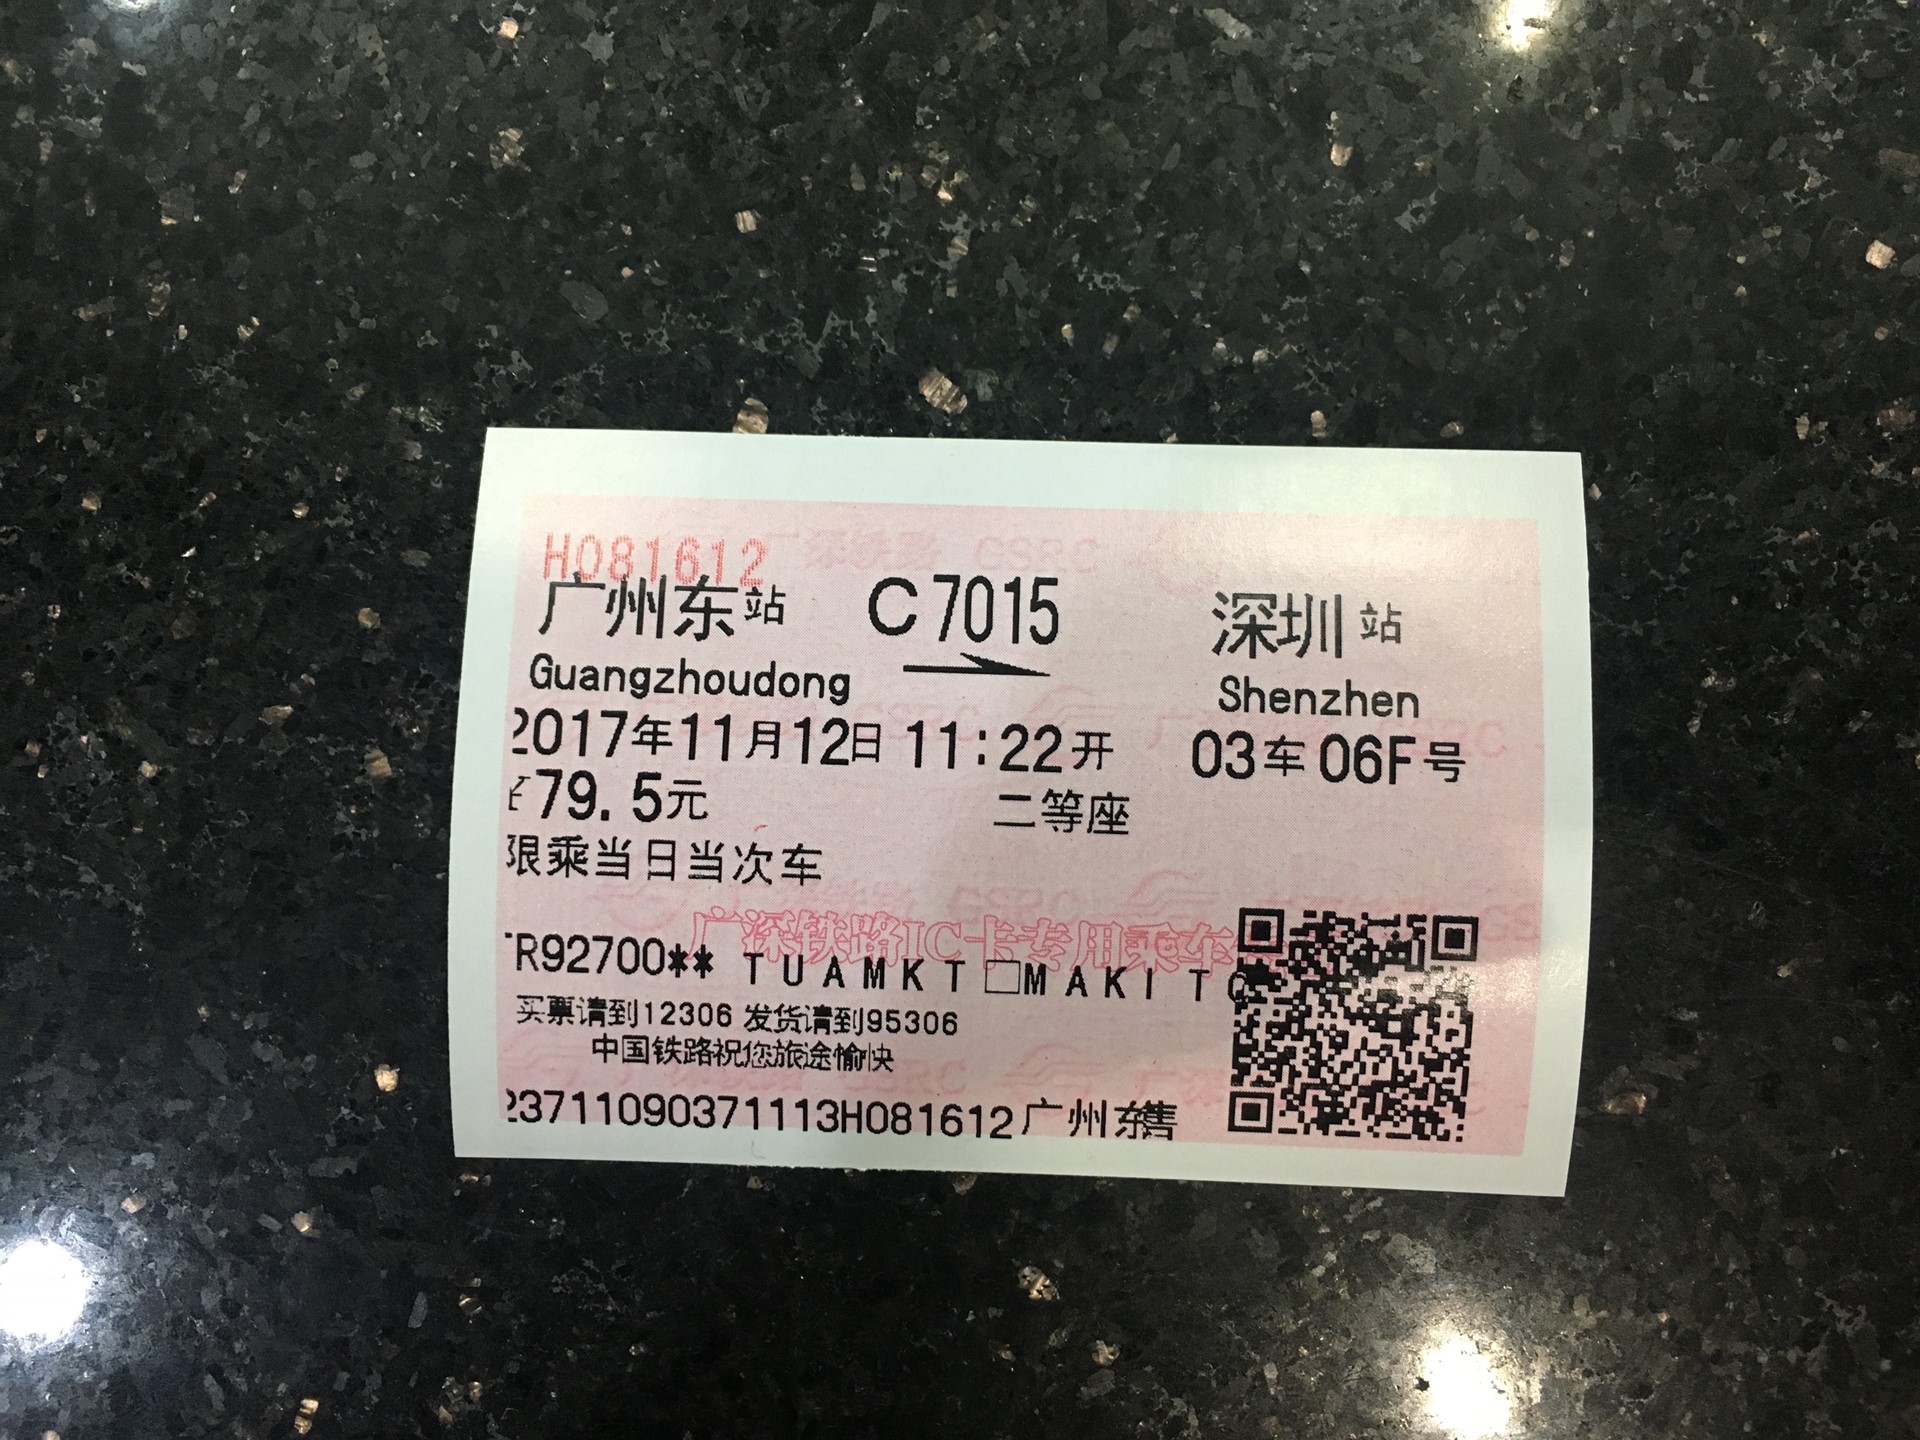 広州東から深圳までの高速鉄道和諧号の切符